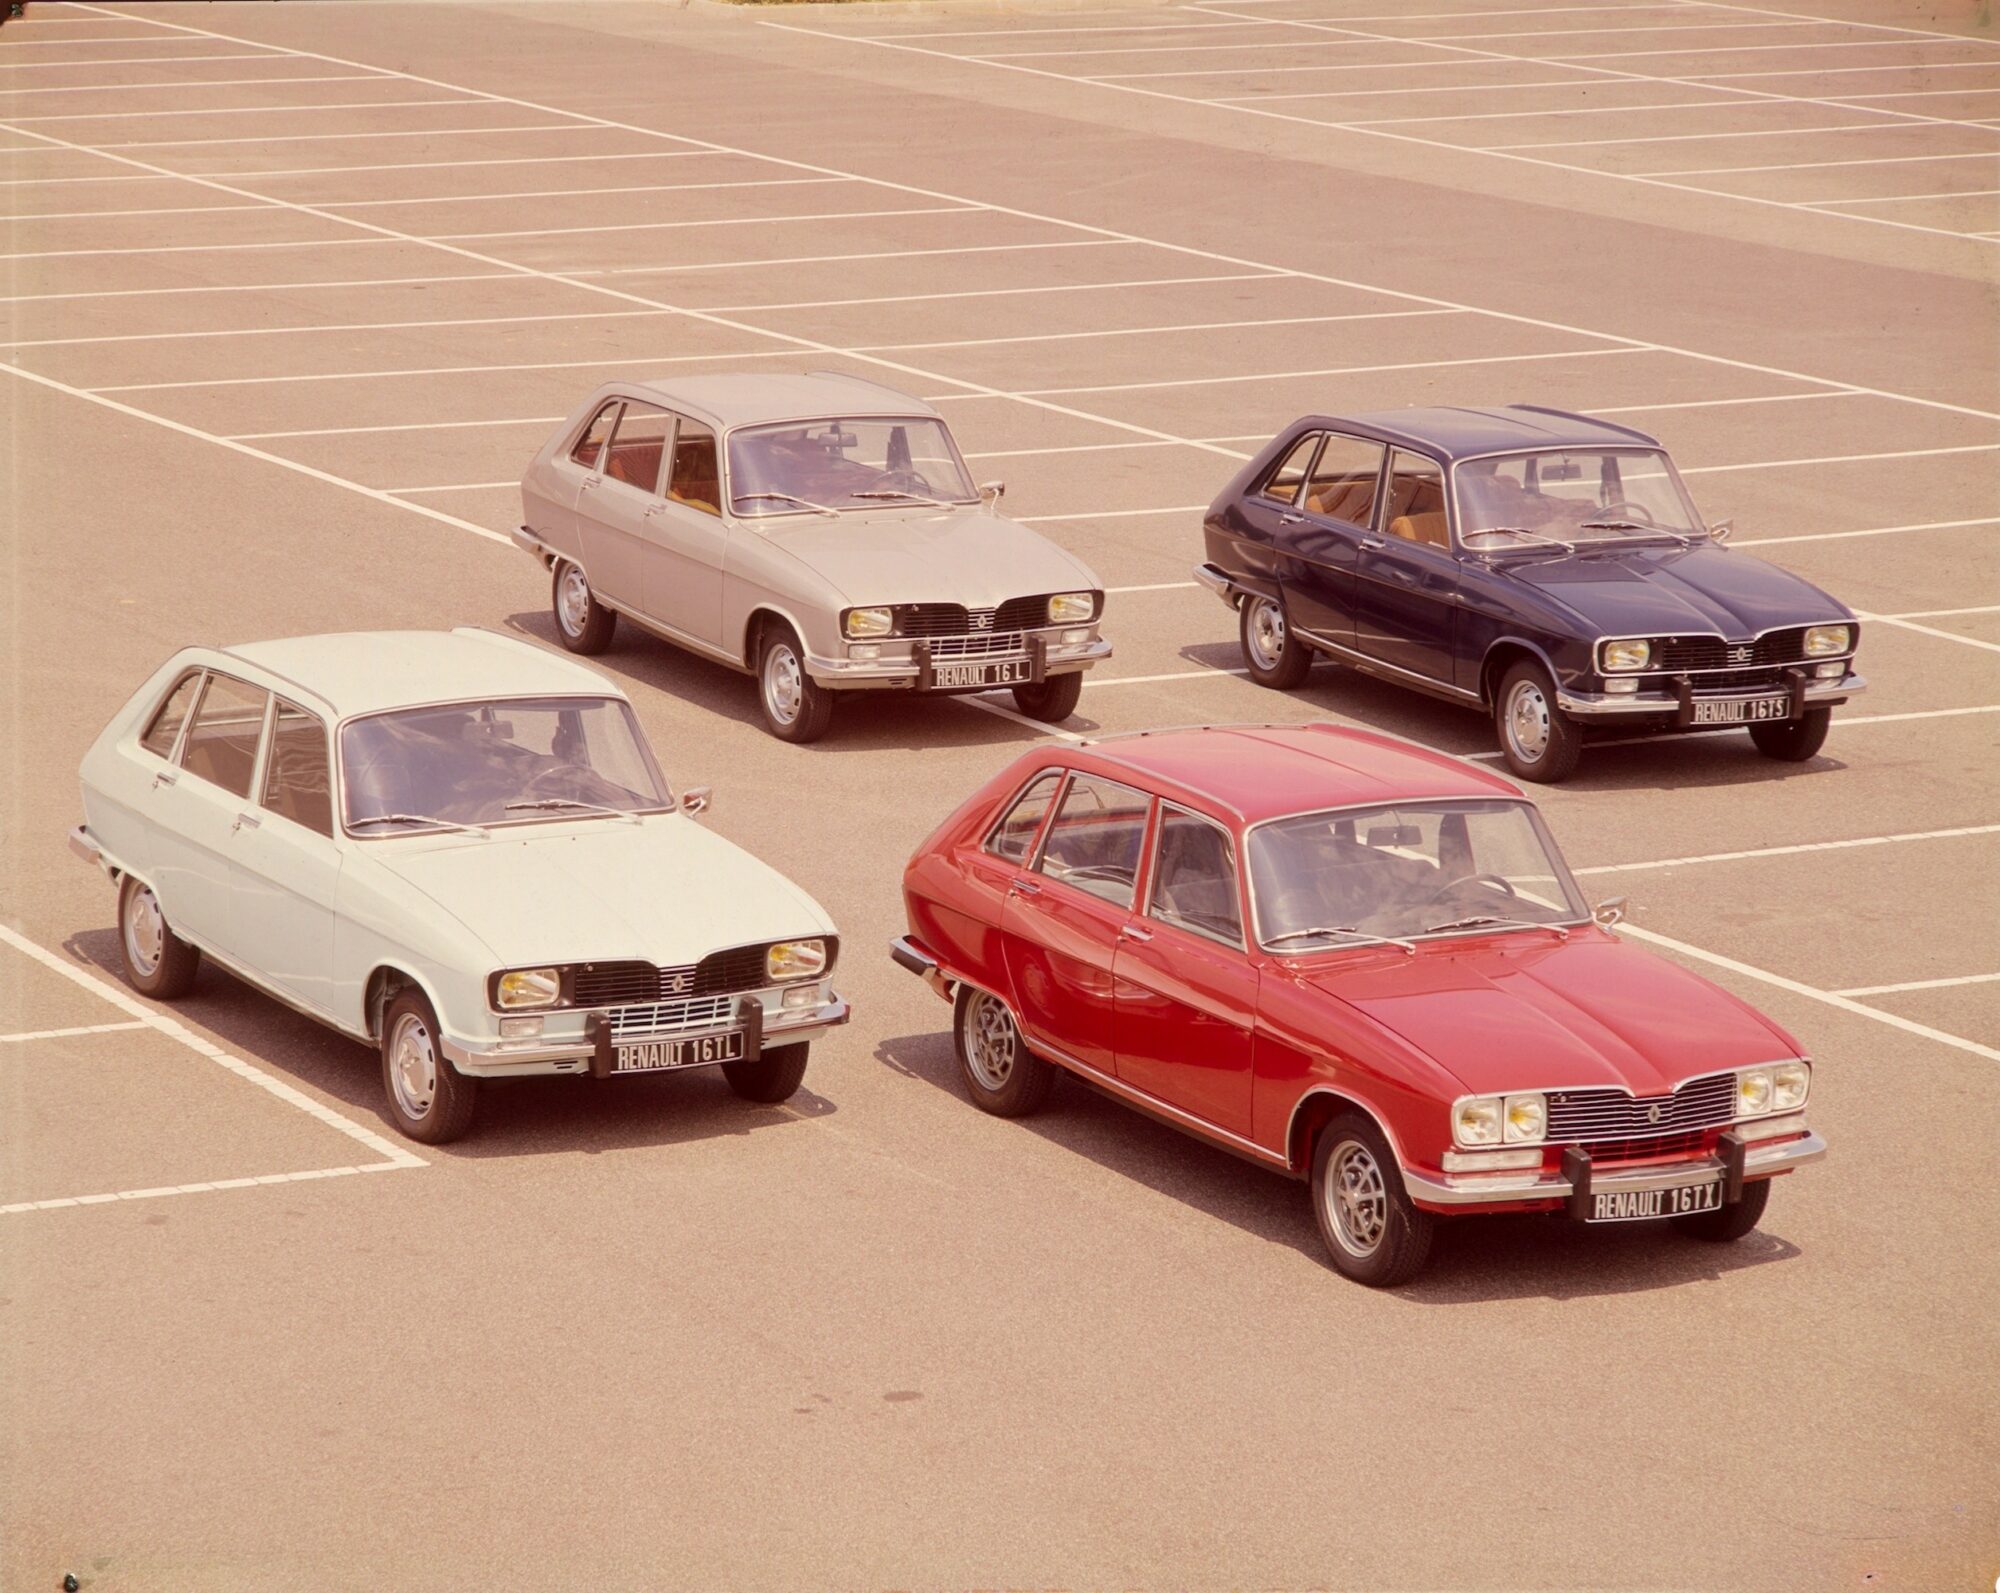 50 anni di Renault 16 al Salone Retromobile